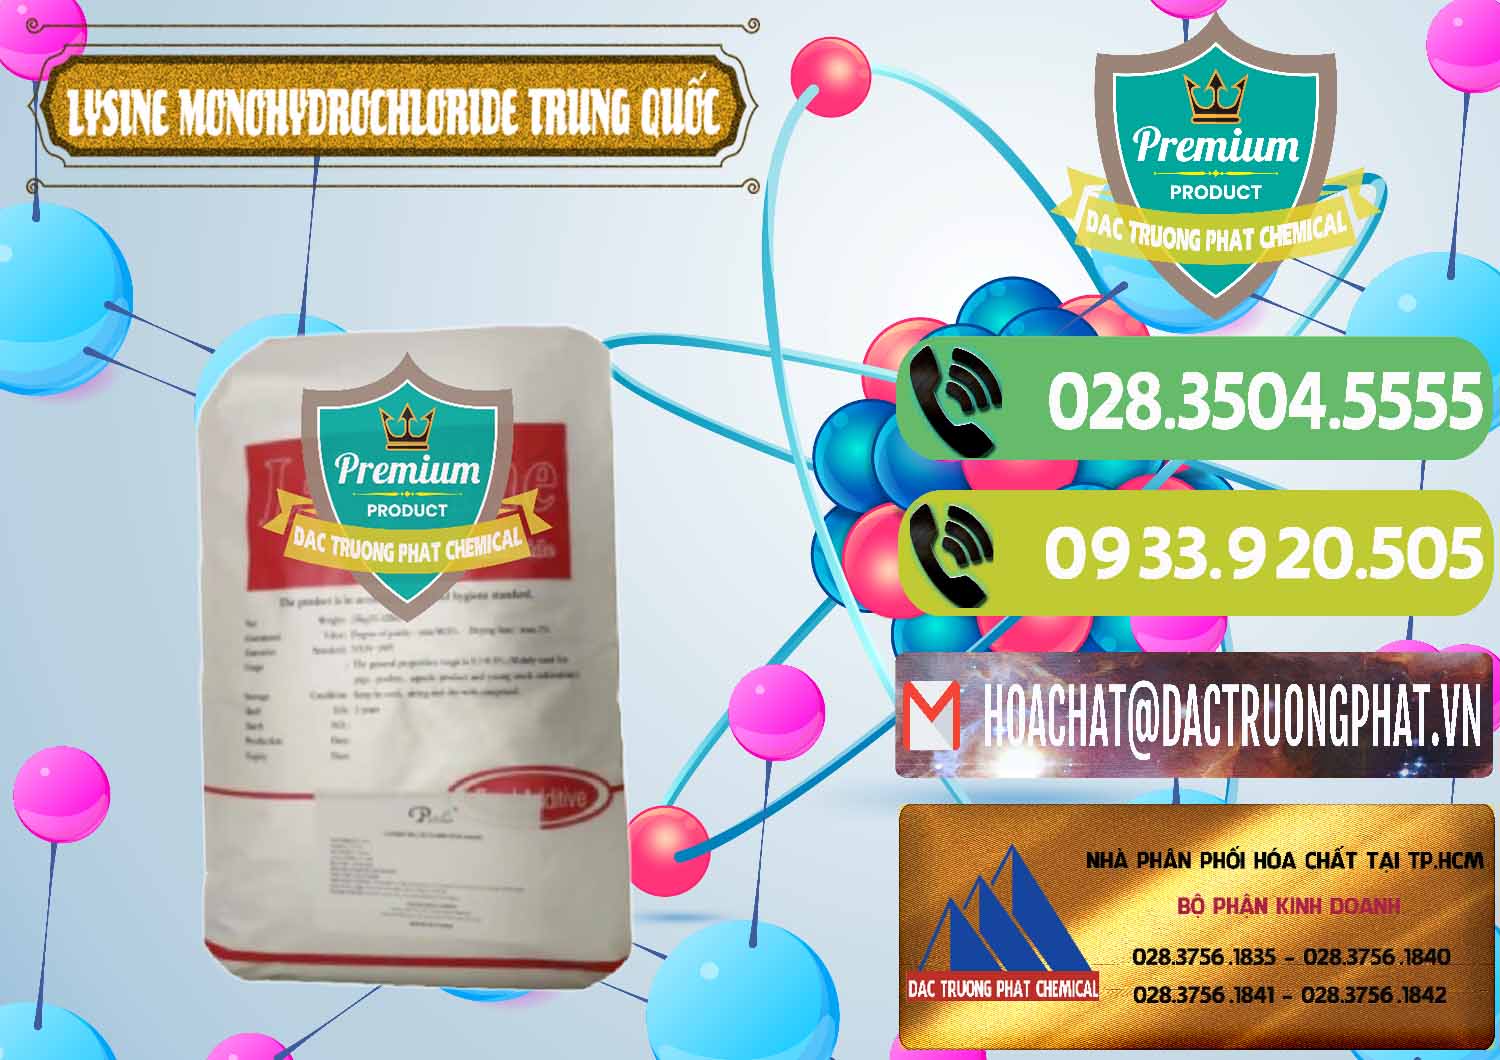 Đơn vị chuyên cung cấp & bán L-Lysine Monohydrochloride Feed Grade Trung Quốc China - 0454 - Công ty chuyên cung cấp - kinh doanh hóa chất tại TP.HCM - hoachatmientay.vn